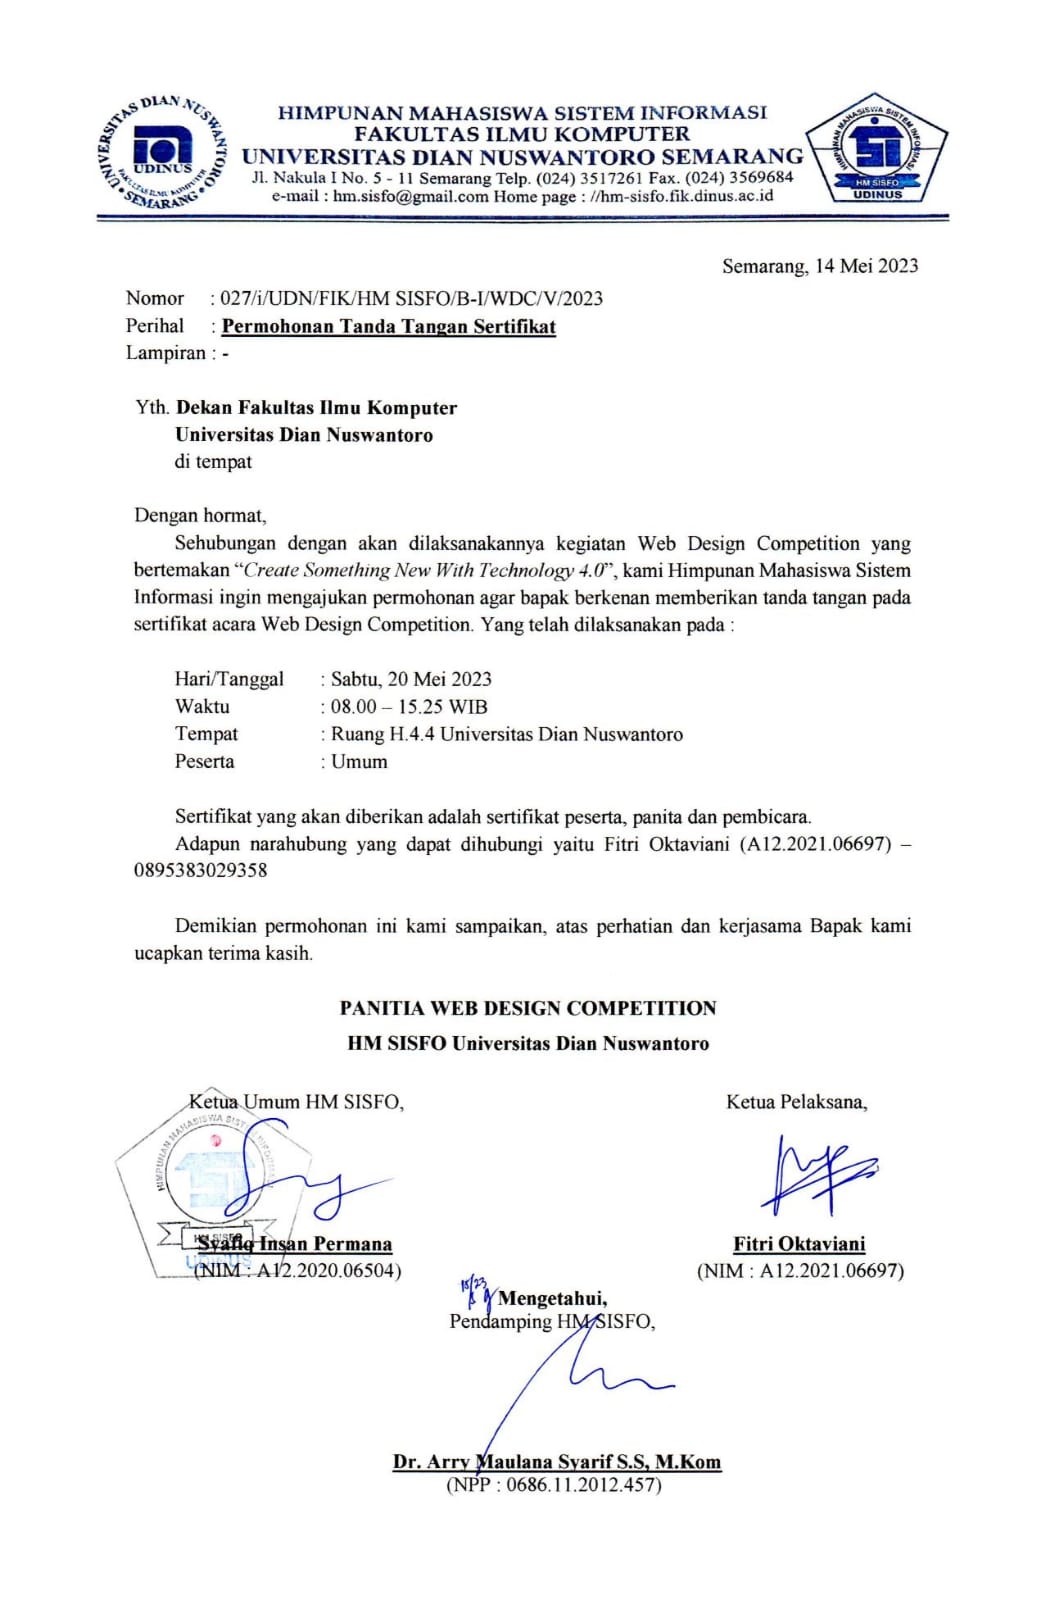 Surat Permohonan Tanda Tangan Sertifikat Dekan Fakultas Ilmu Komputer  Universitas Dian Nuswantoro